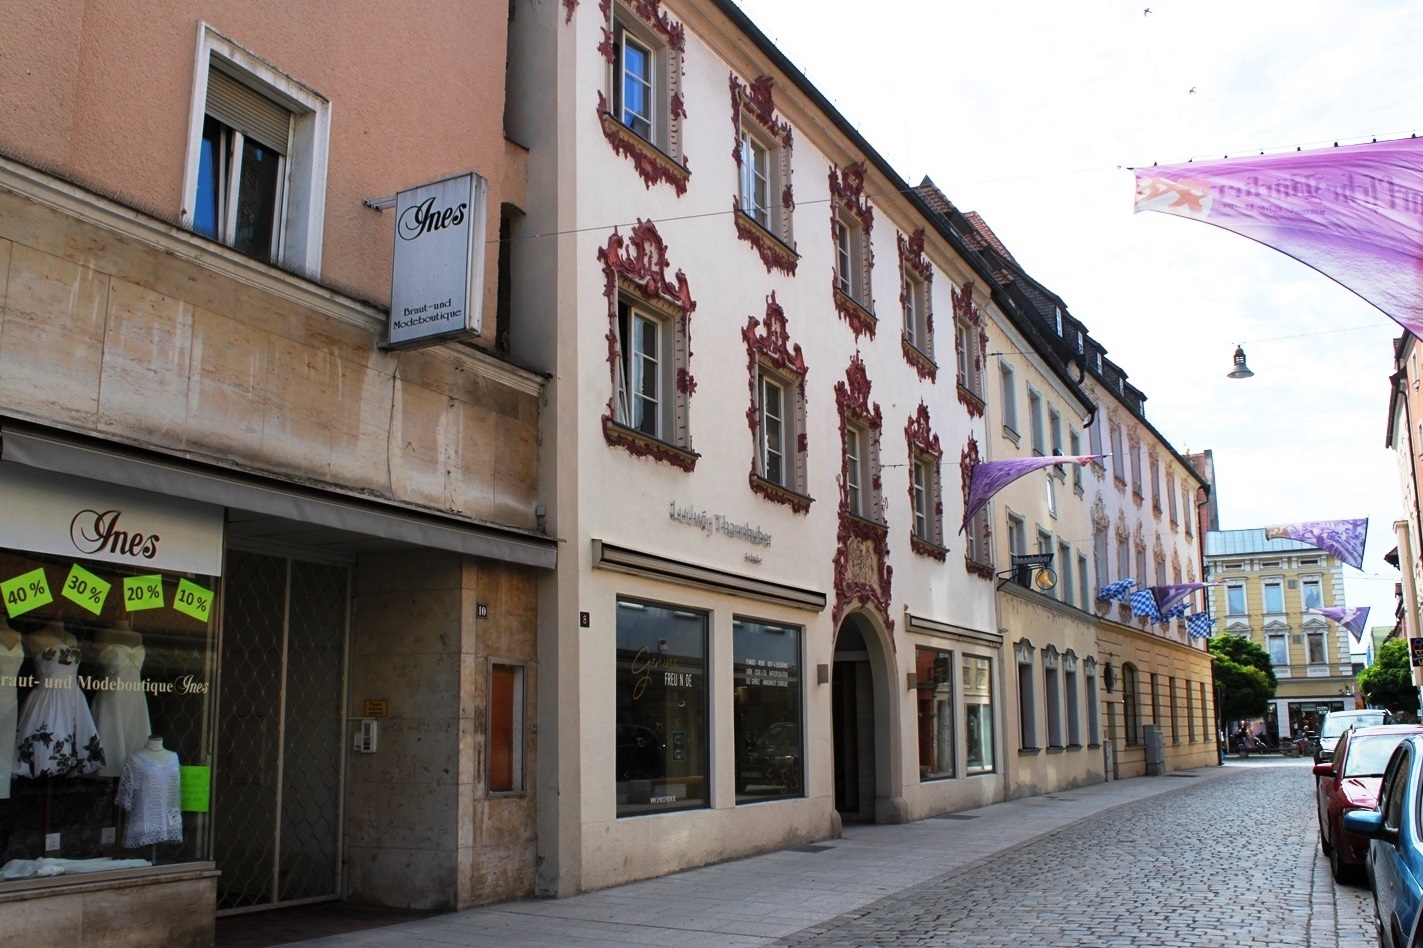 Wohn- & Geschäftshaus in der Altstadt von Straubing